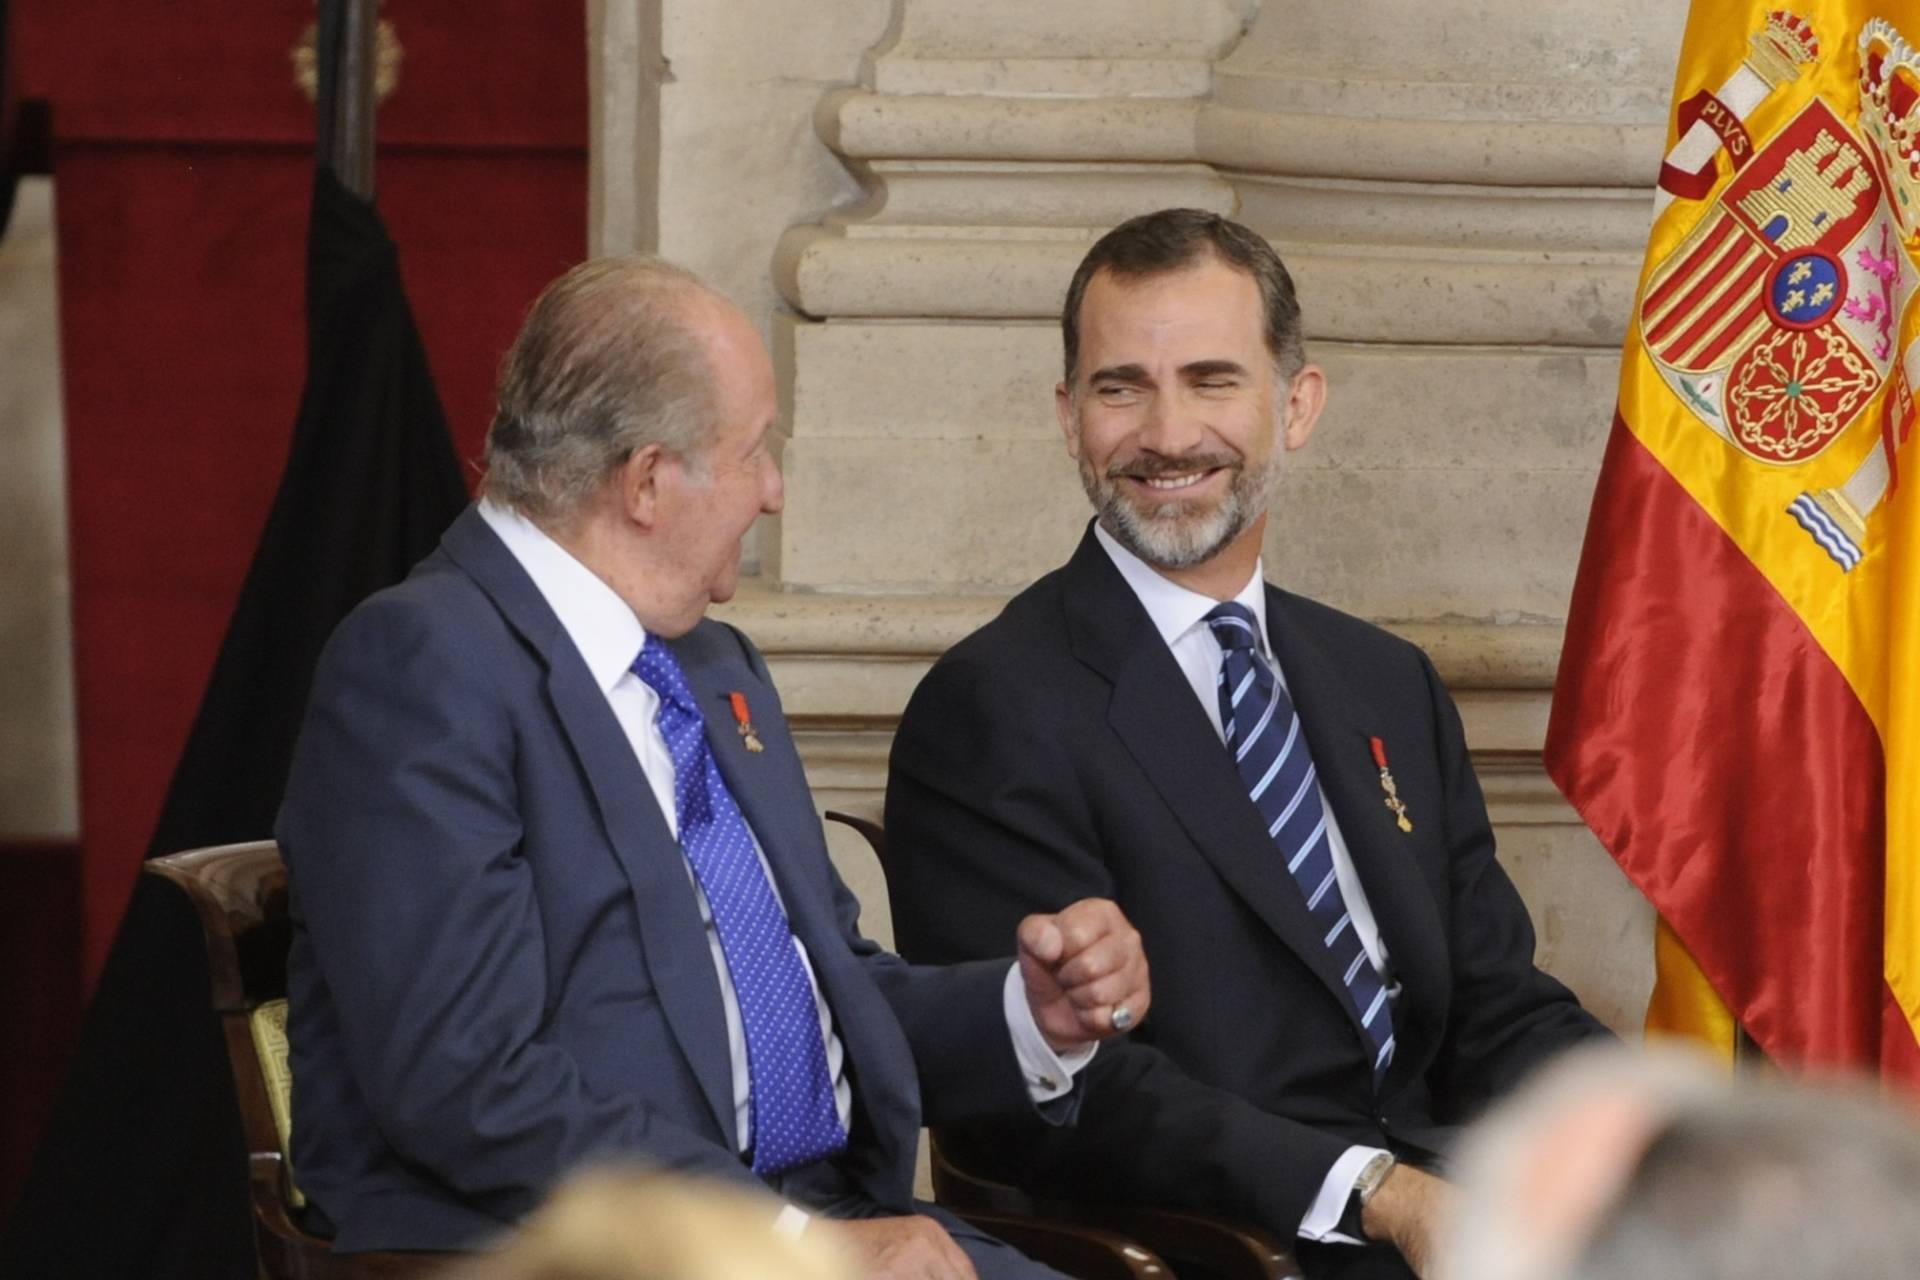 El Rey Juan Carlos I y un empresario catalán pagaron 447.000 euros por la luna de miel de Felipe y Letizia